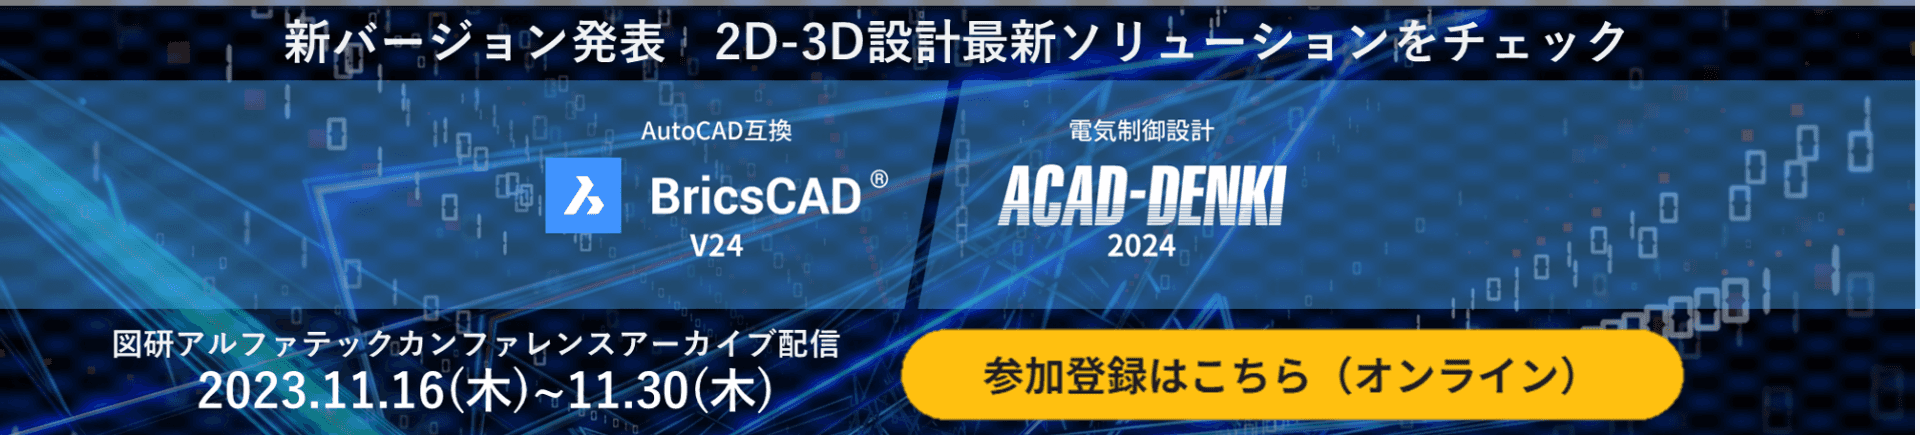 BricsCADV24,ACAD-DENKI2024新機能発表